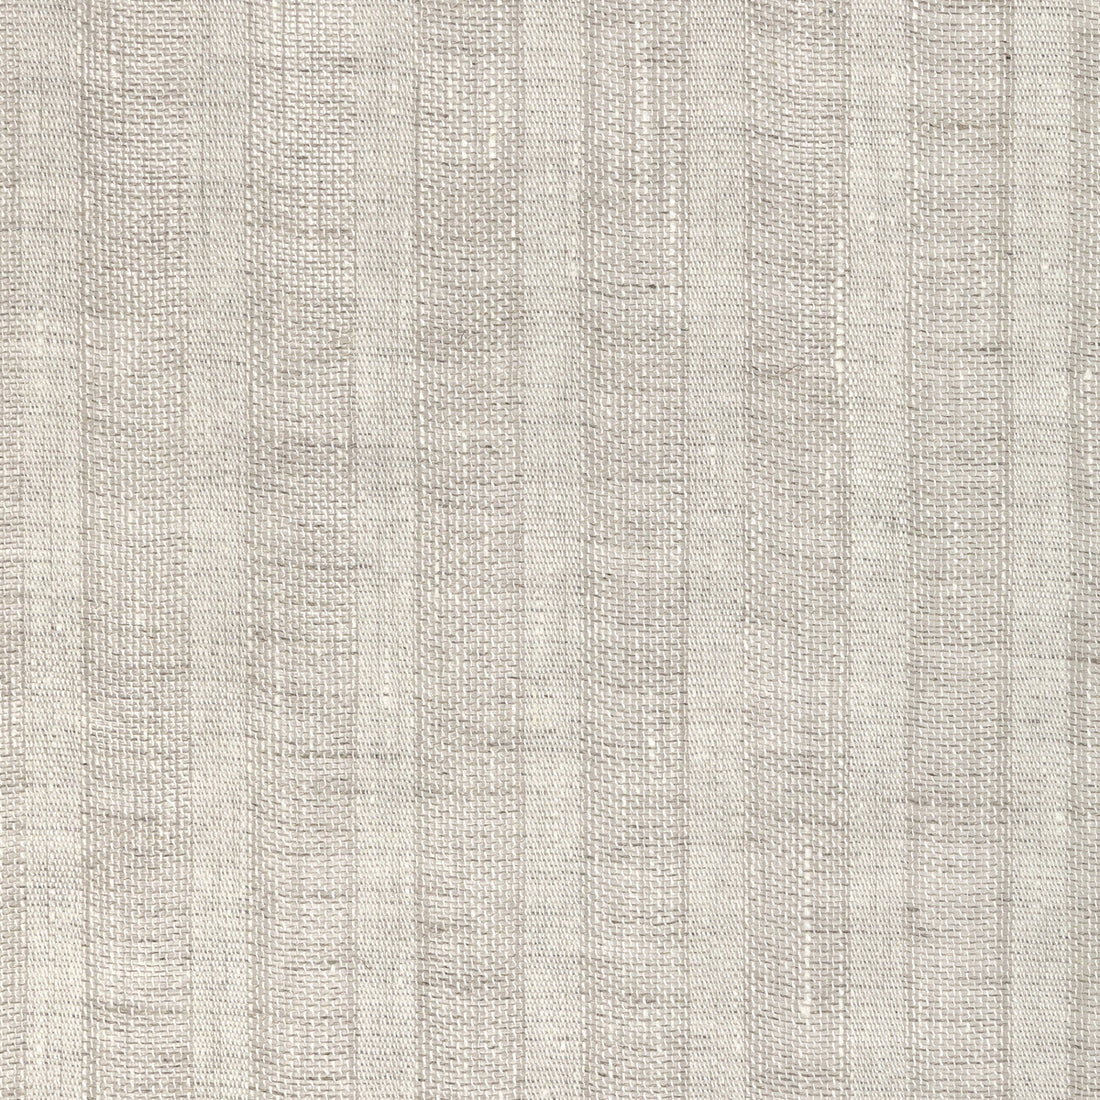 Kravet Basics fabric in 4944-16 color - pattern 4944.16.0 - by Kravet Basics